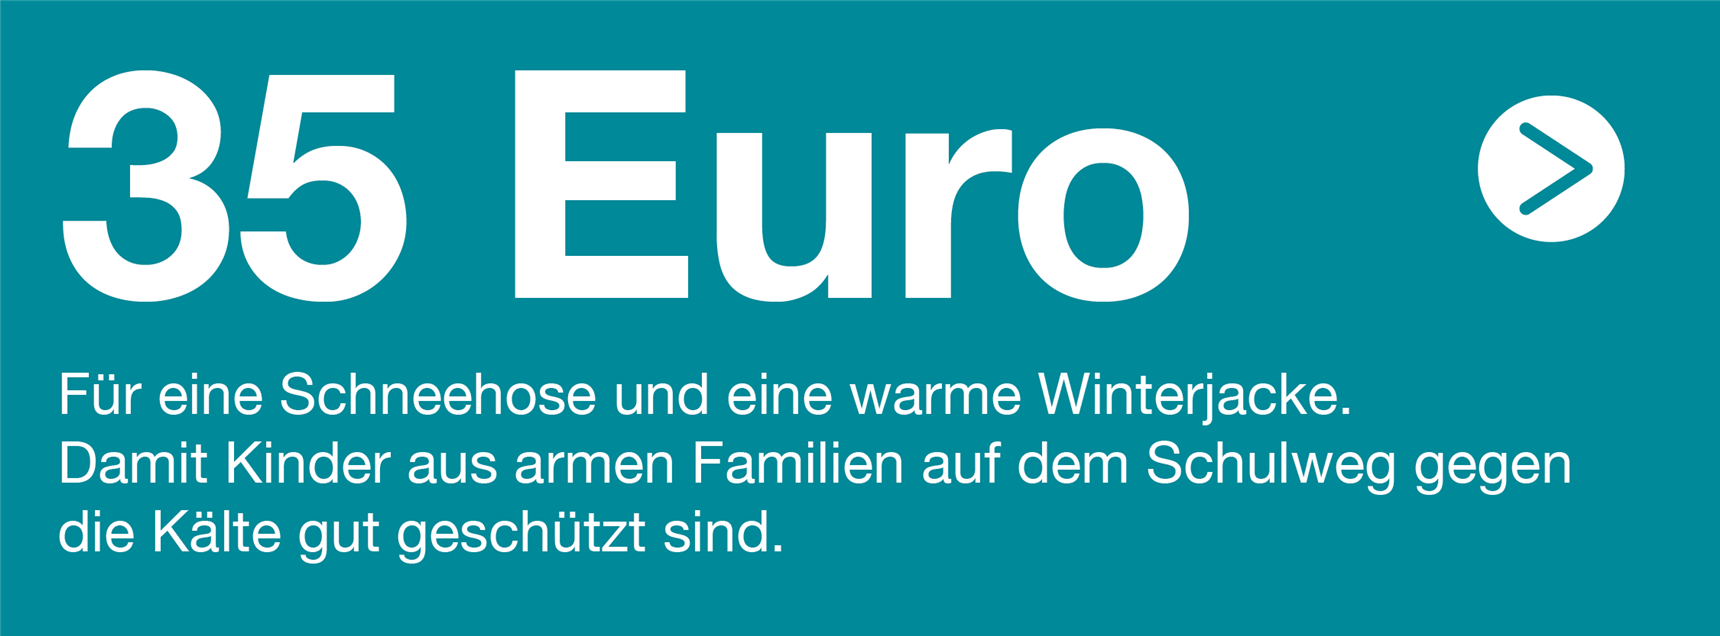 Zeigt einen Text: "35 Euro Für eine Schneehose und eine warme Winterjacke. Damit Kinder aus armen Familien auf dem Schulweg gegen die Kälte gut geschützt sind."